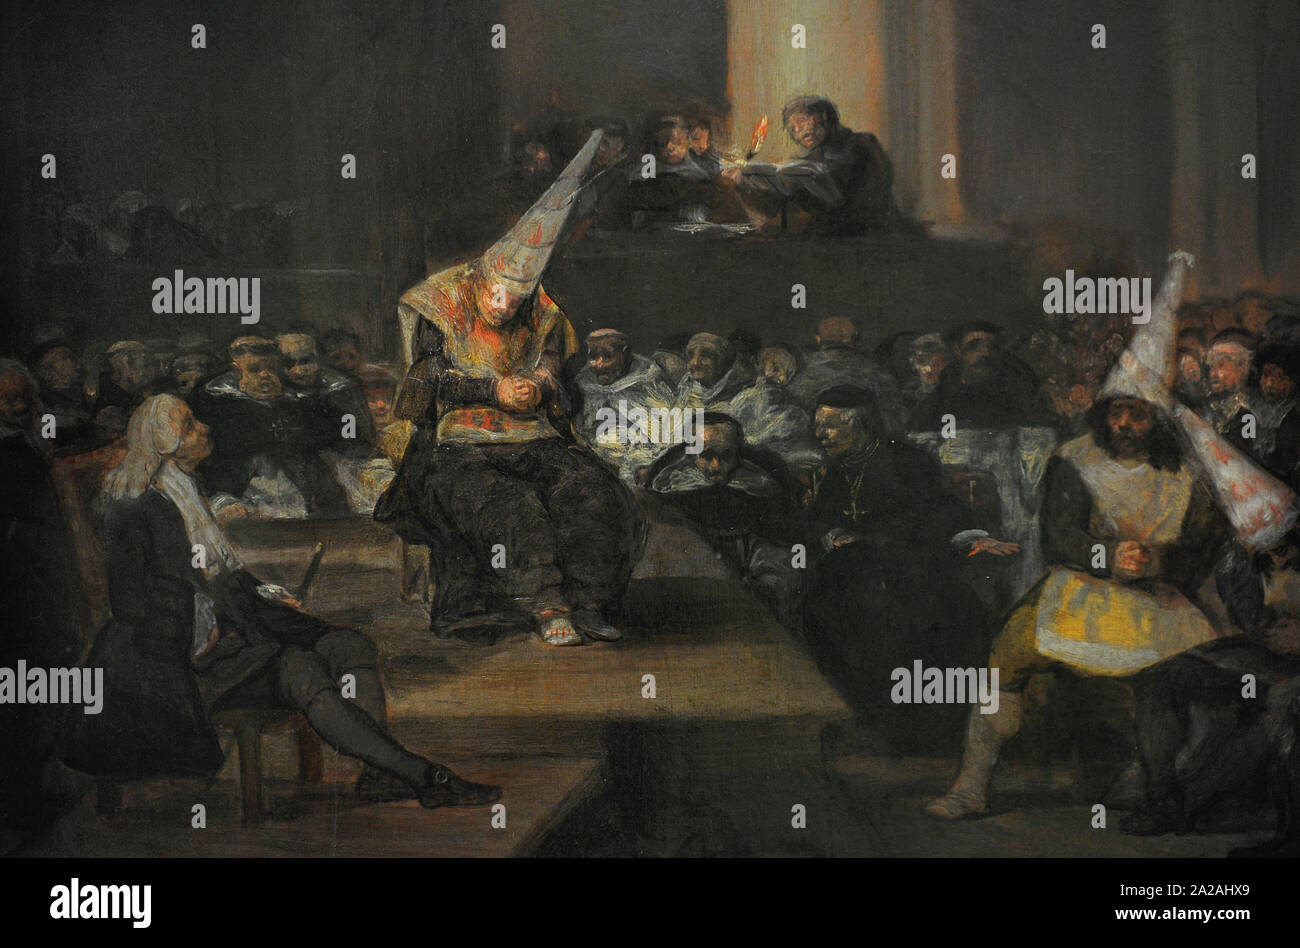 Francisco de Goya y Lucientes (1746-1828). Spanischer Maler. Die Inquisition Szene, 1808-1812. Detail. San Fernando Königliche Akademie der Schönen Künste in Madrid. Spanien. Stockfoto